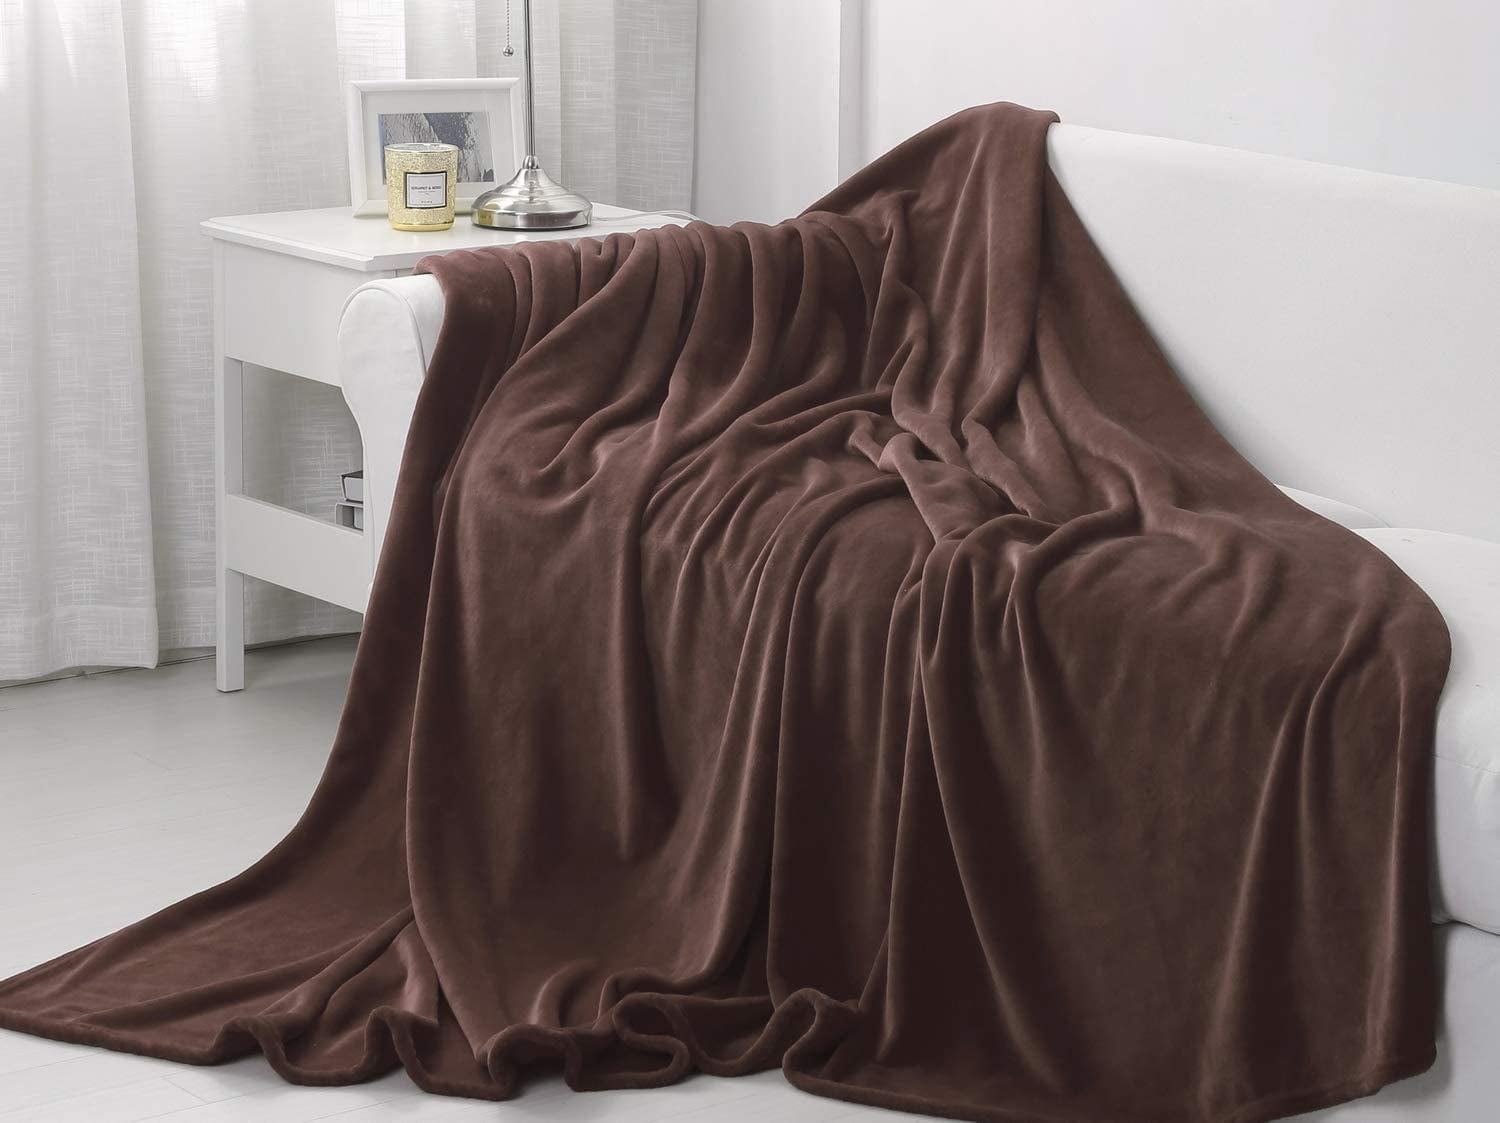 Sedona House Flannel Teal Fleece Blanket King Size 90"x108", 